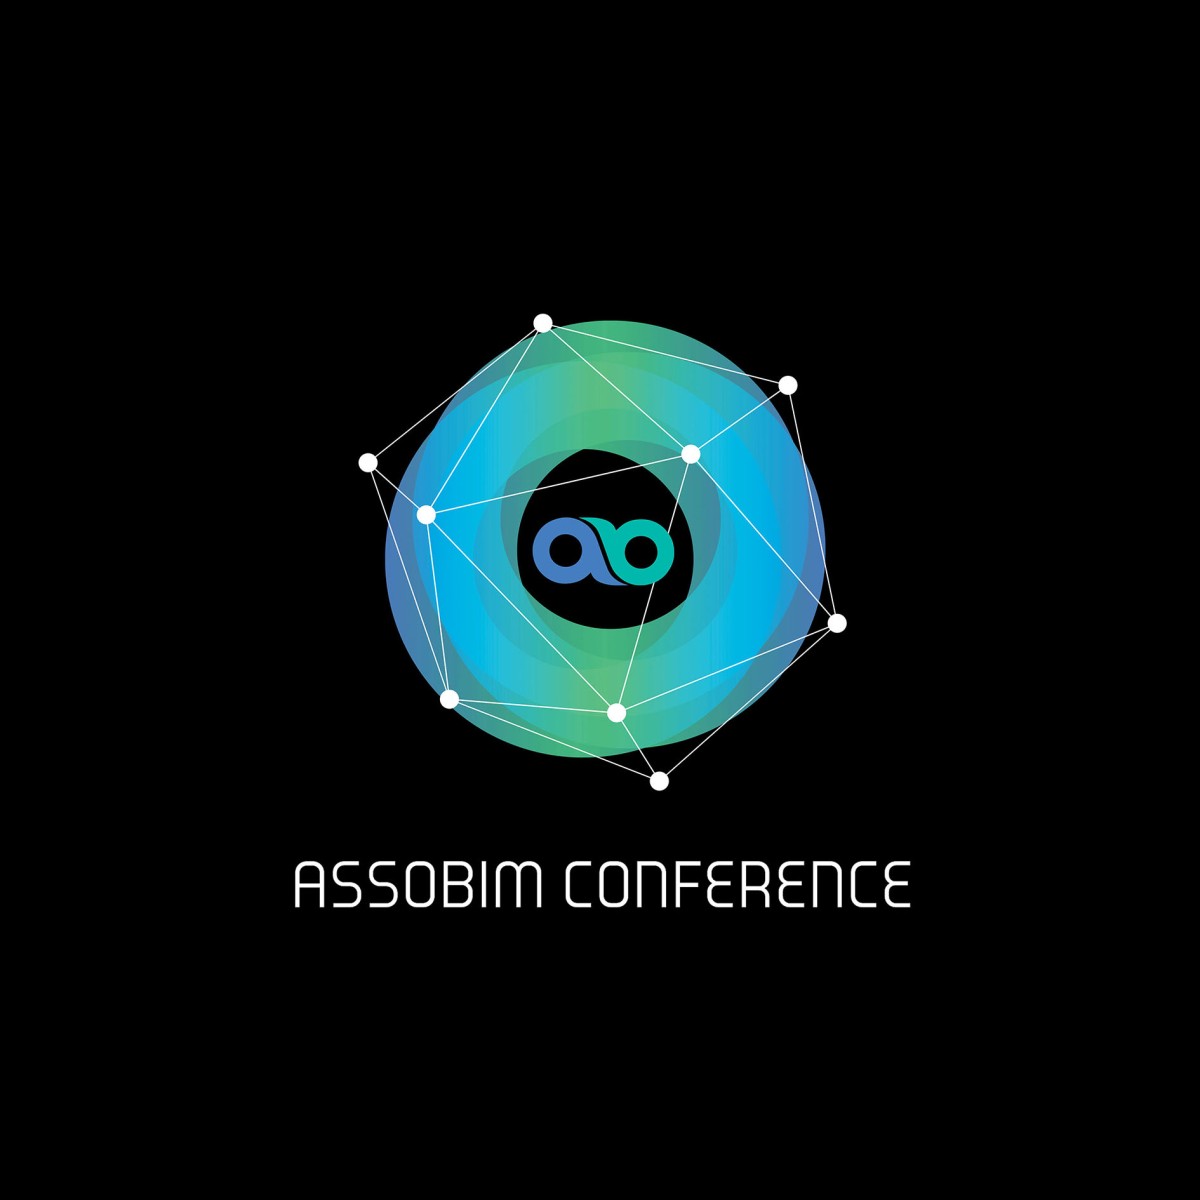 ASSOBIM Conference: focus sulla sostenibilità e sugli obiettivi 2023